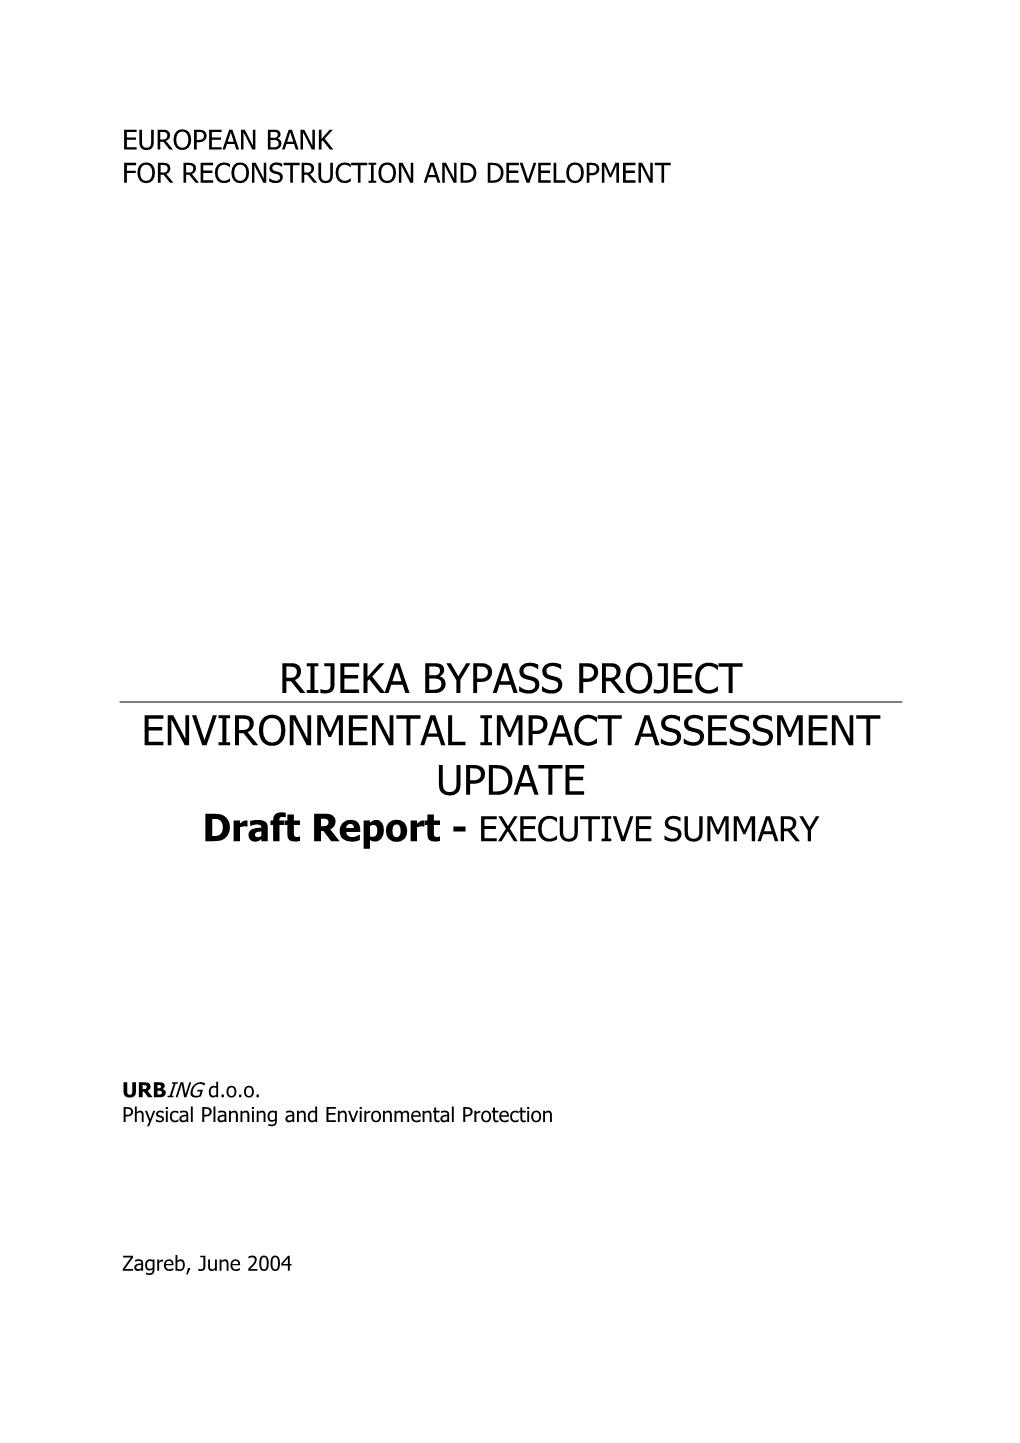 Rijeka Bypass Project [EBRD